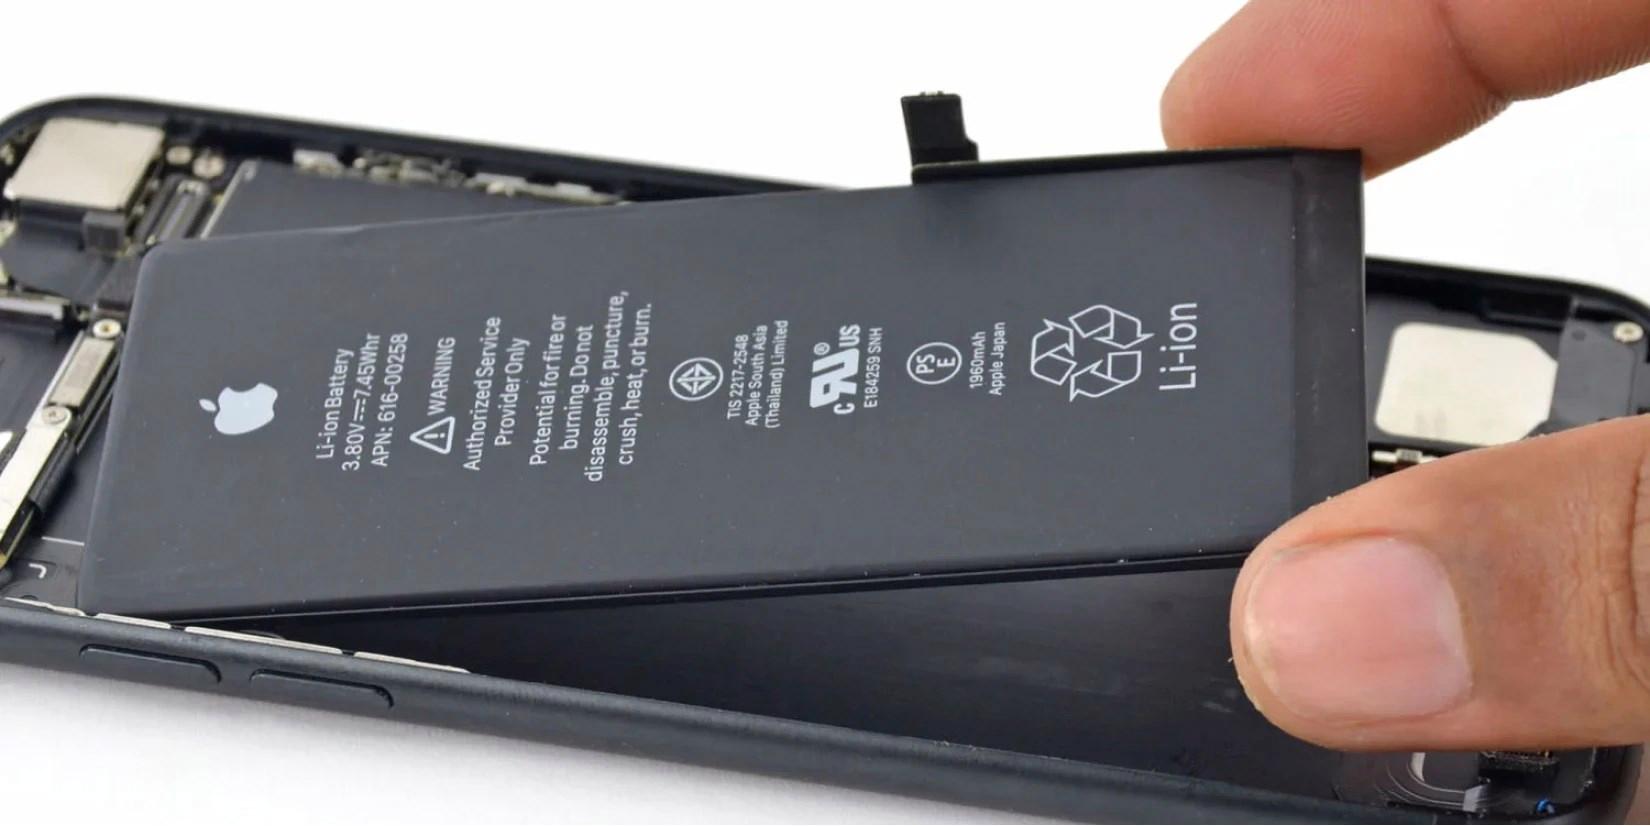 gelecek-iphonelar-ayni-boyutta-daha-buyuk-bataryaya-sahip-olabilir-iste-applein-yeni-patenti-Ah7WVuv1.jpg